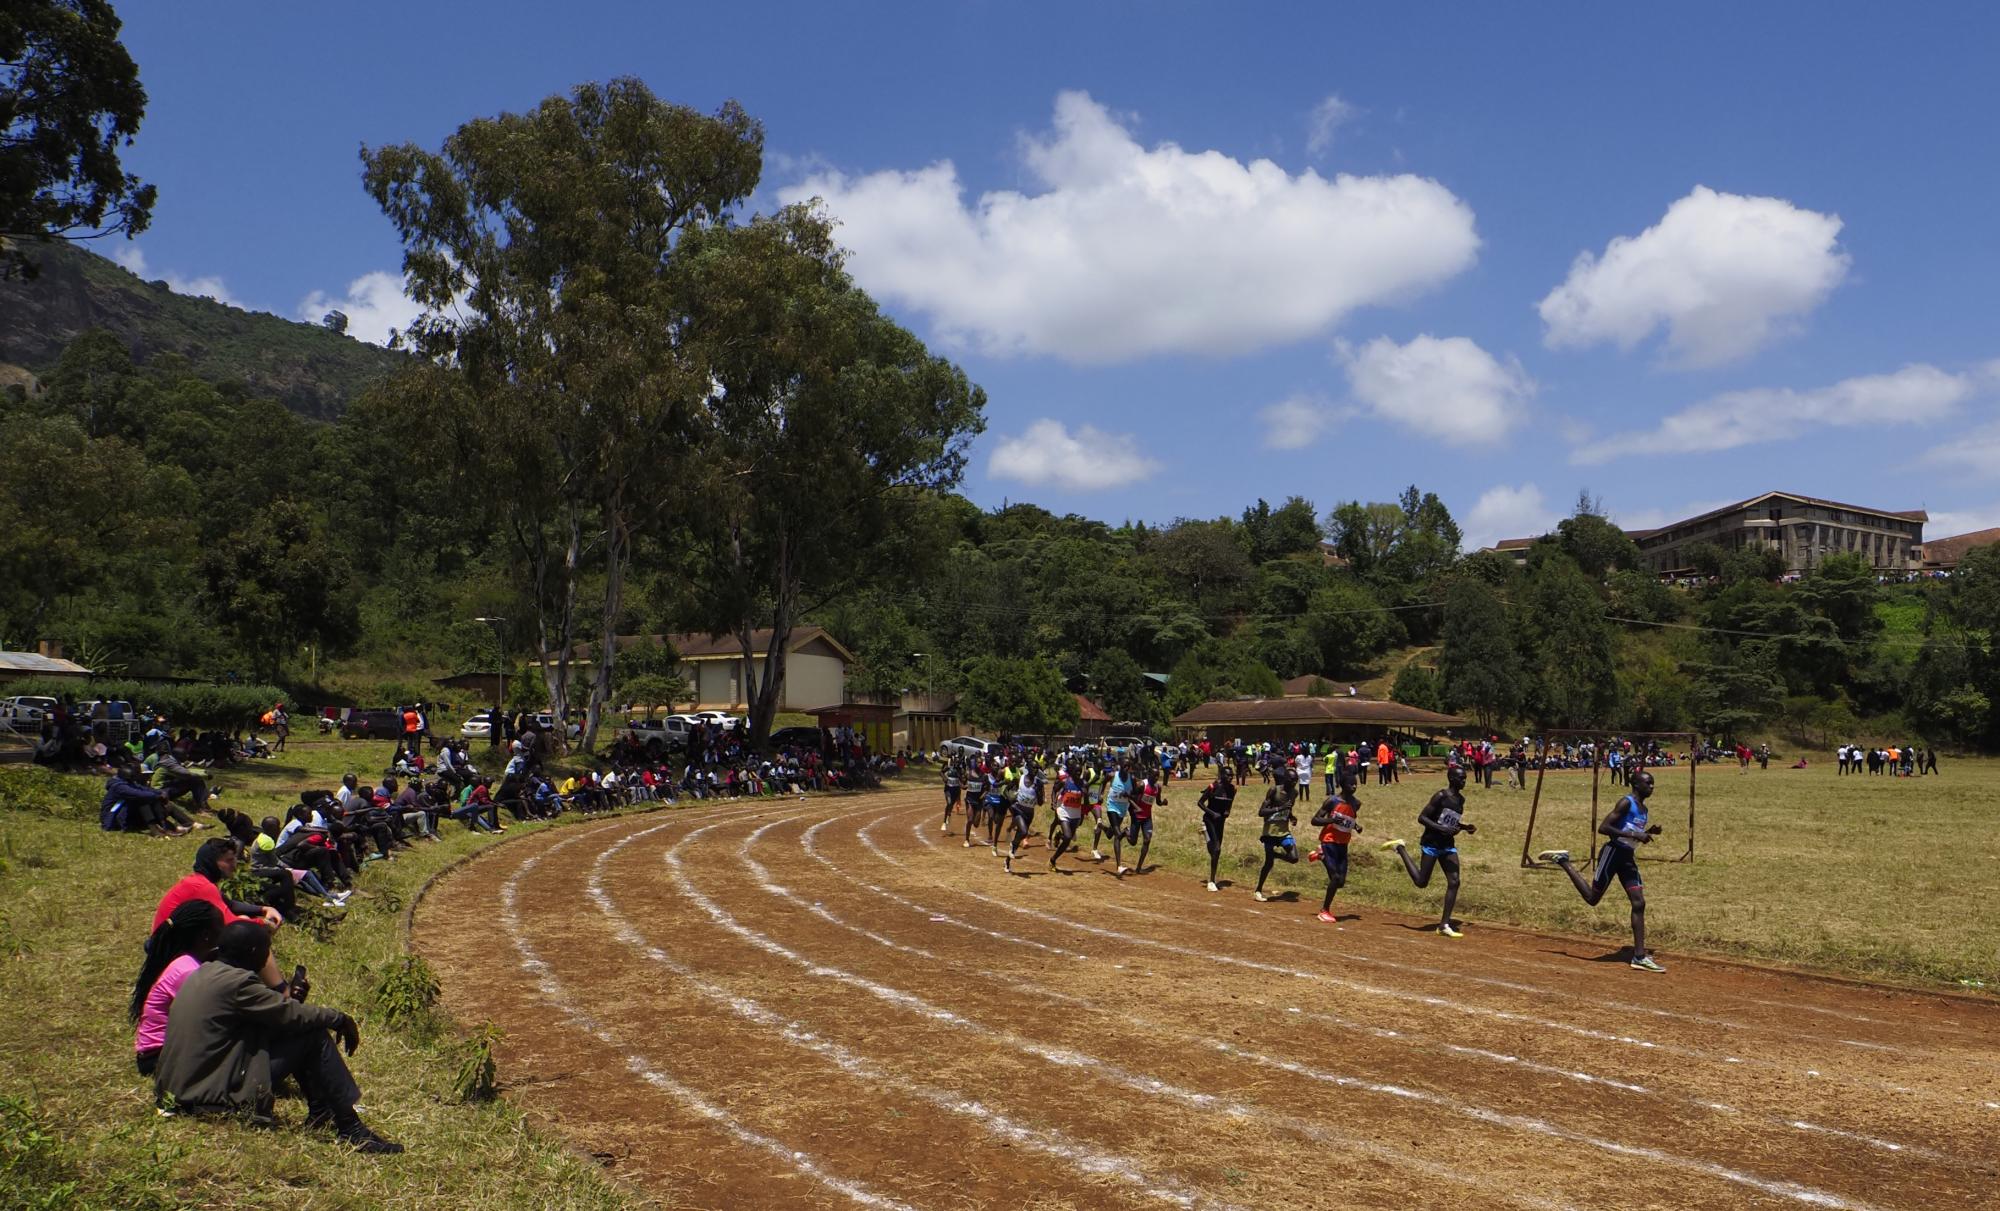 Lasterketa bat Tambacheko atletismo pistan, Itenetik gertu (Kenya). AITOR GARMENDIA ETXEBERRIA